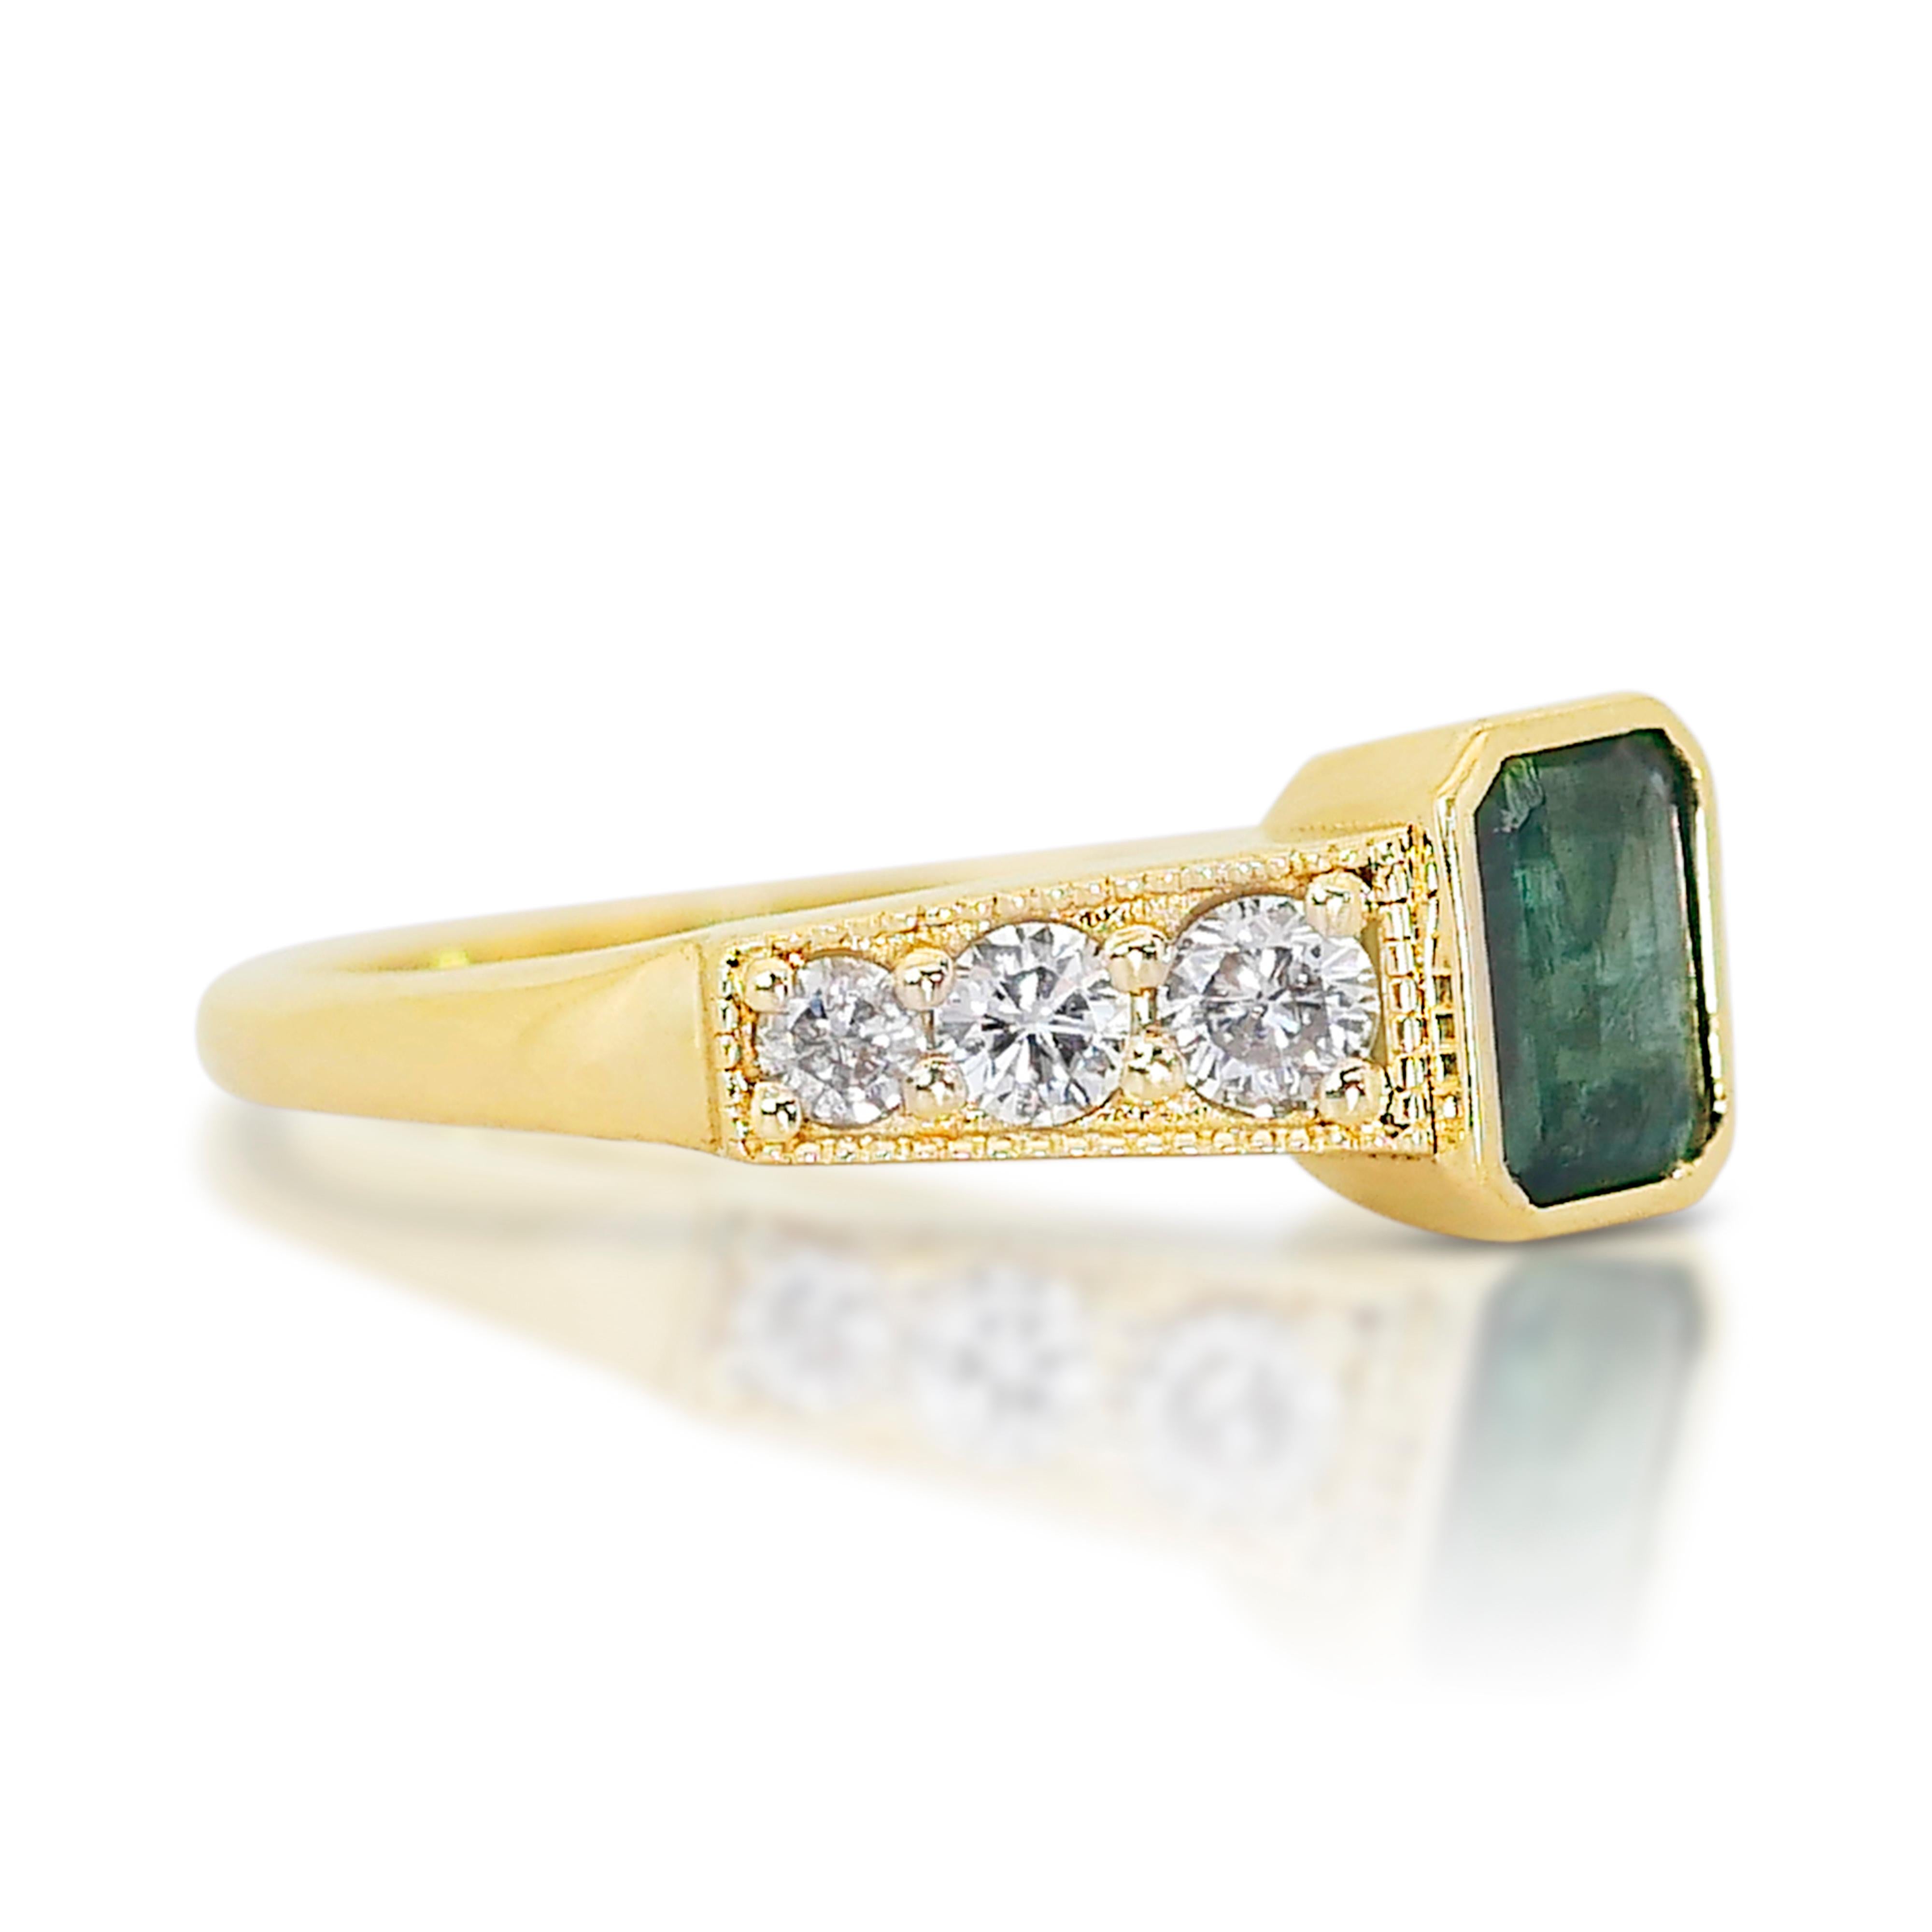 Bezaubernder 14k Gelbgold Smaragd & Diamant Pave-Ring mit/0,89 ct - IGI-zertifiziert (Radiantschliff)